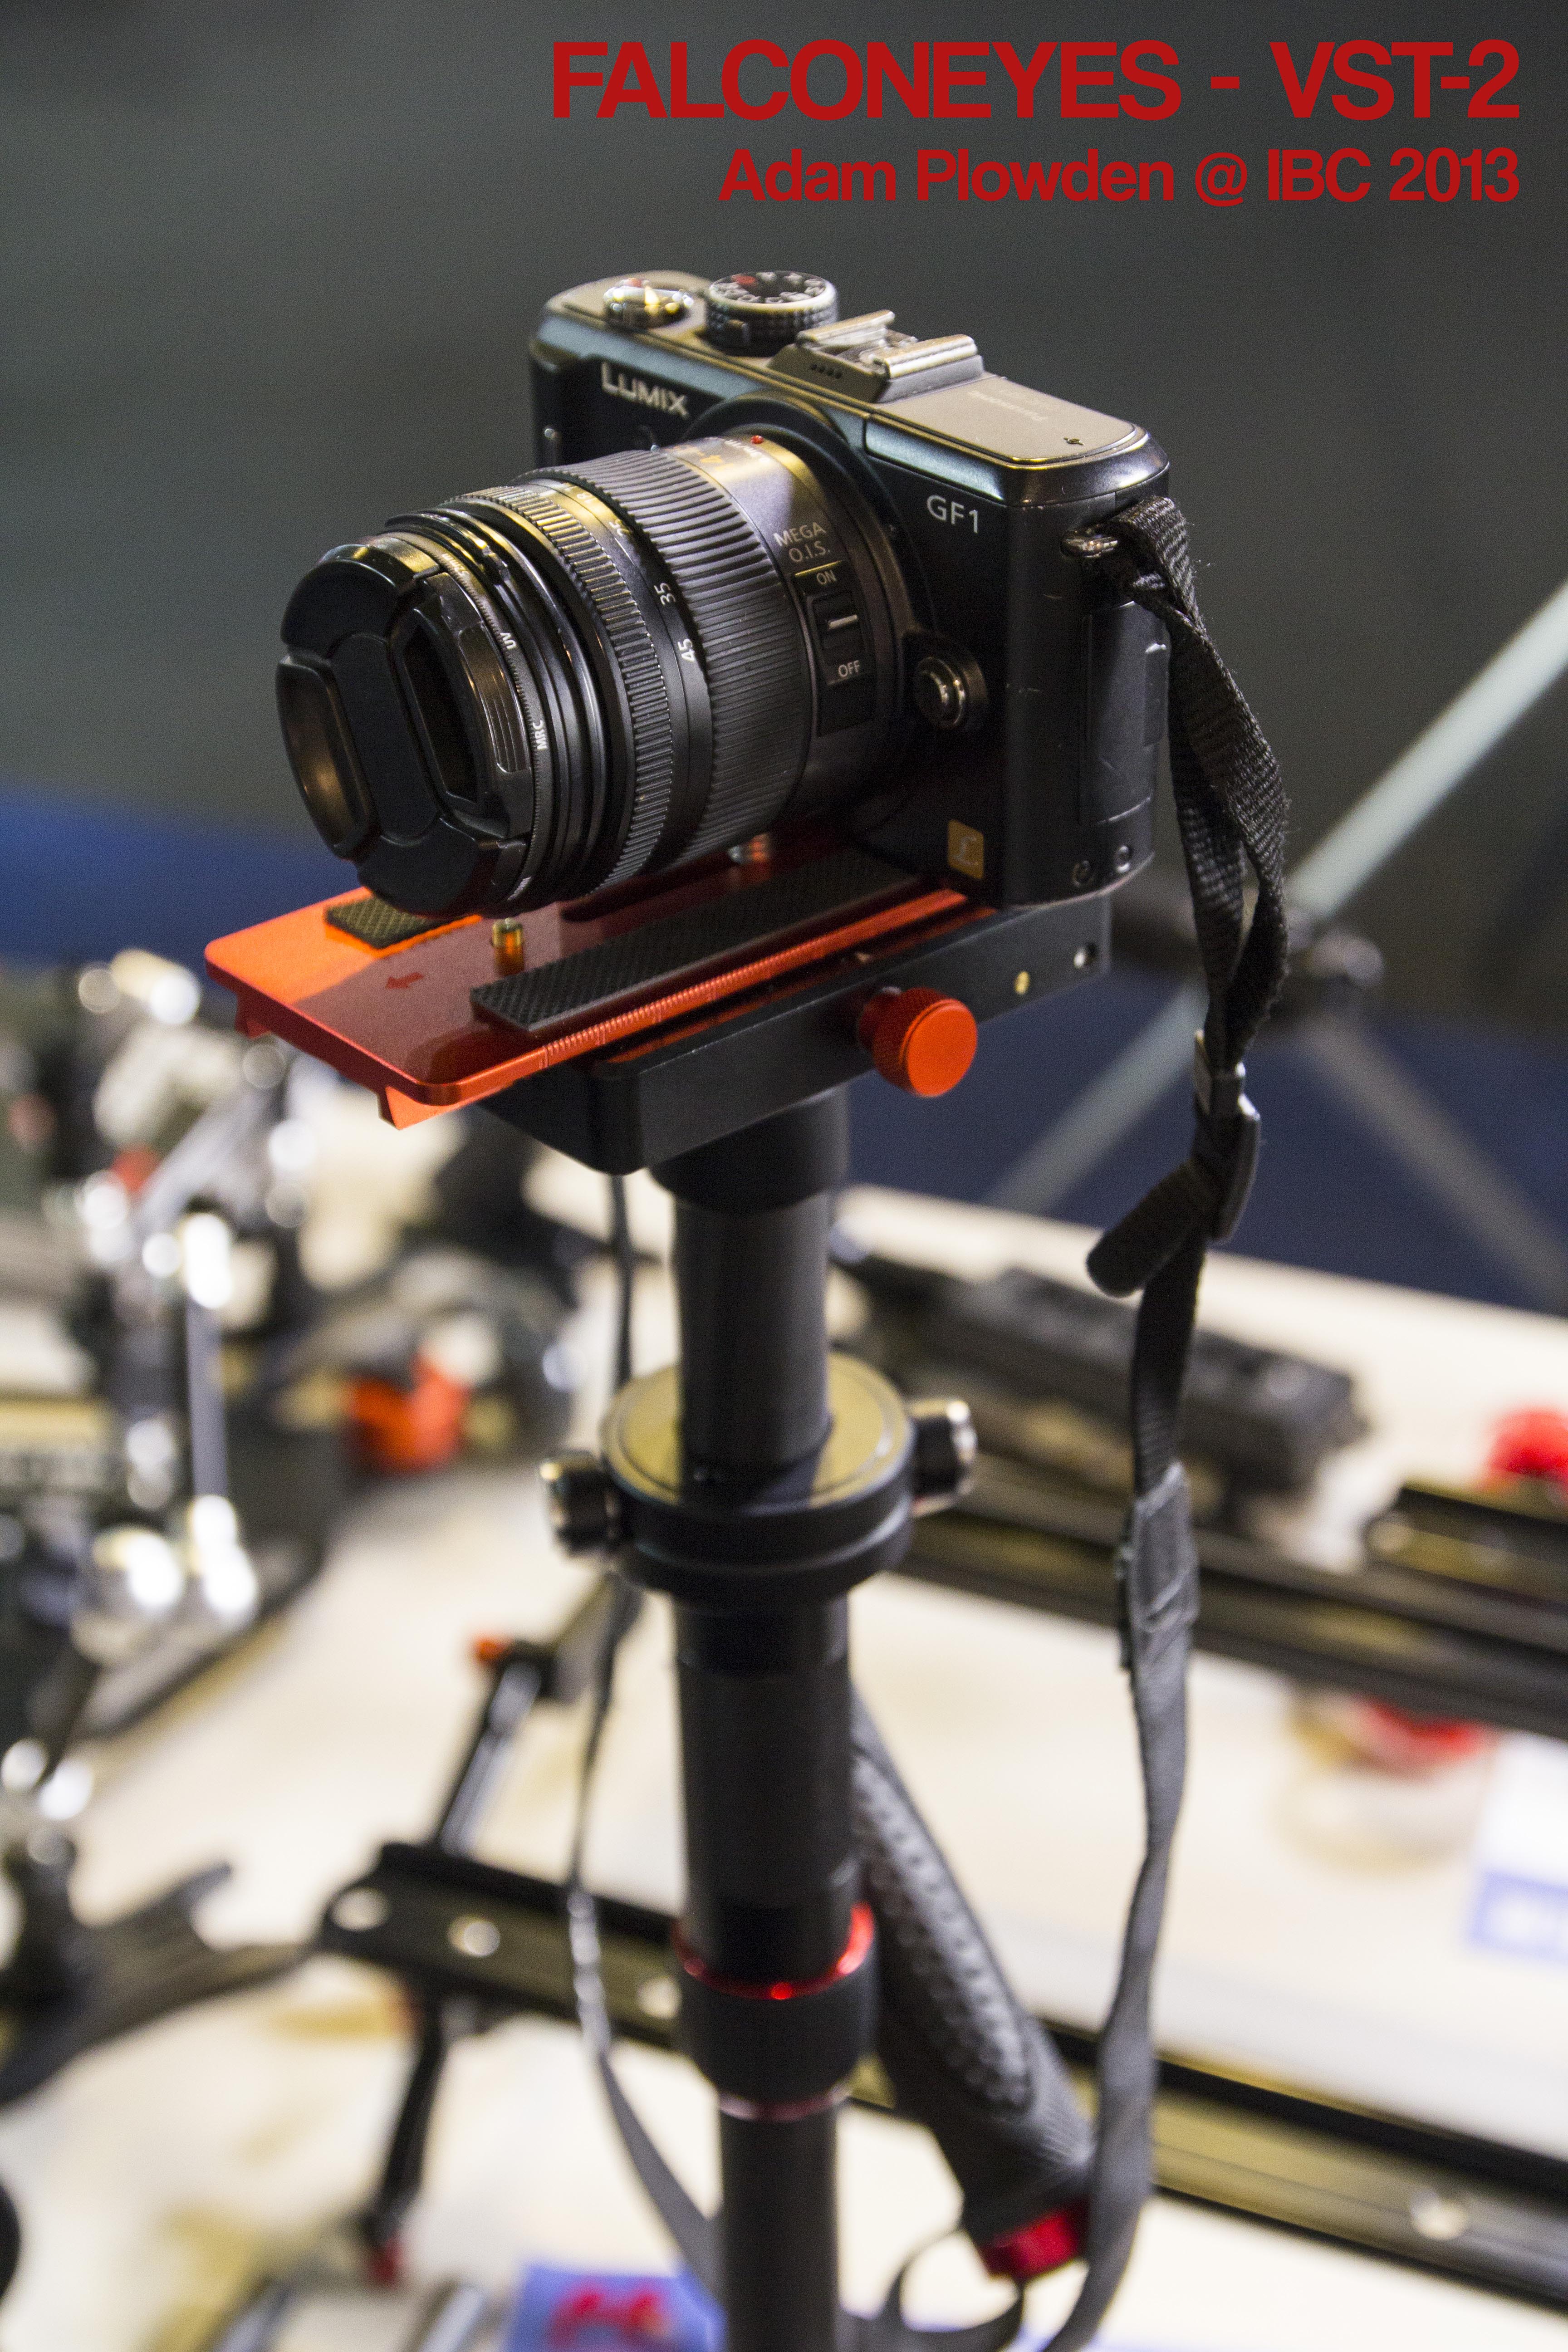 FALCONEYES videography equipment at IBC 